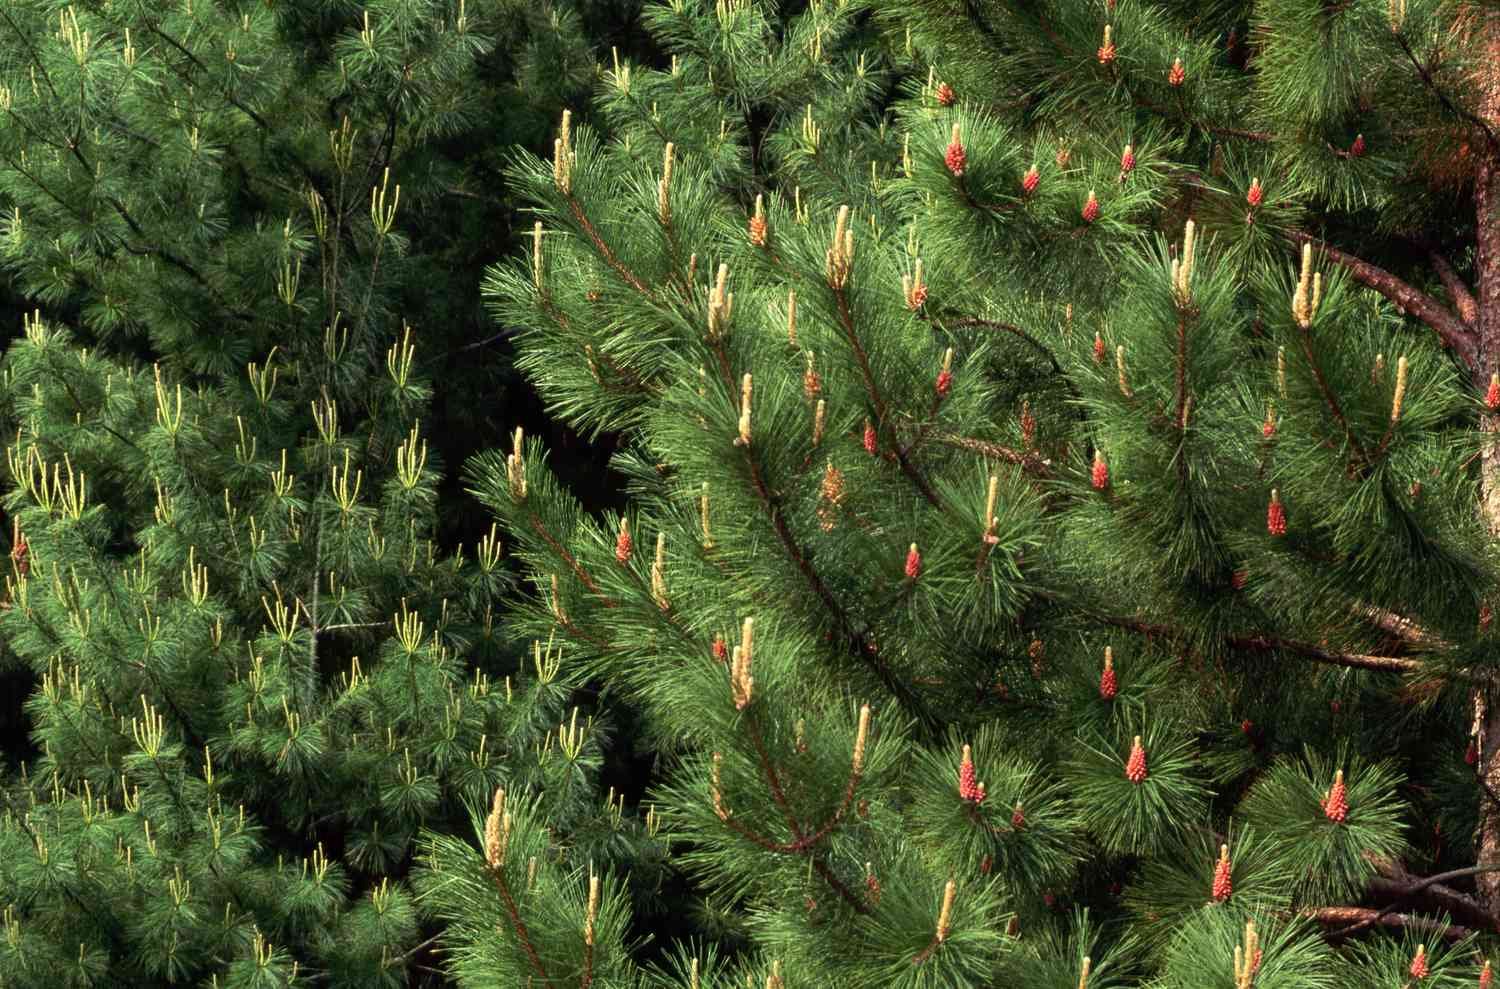 Ткань хвойных. Сосны красная ( Pinus resinosa). Красная хвоя. Сосна с красными иголками.